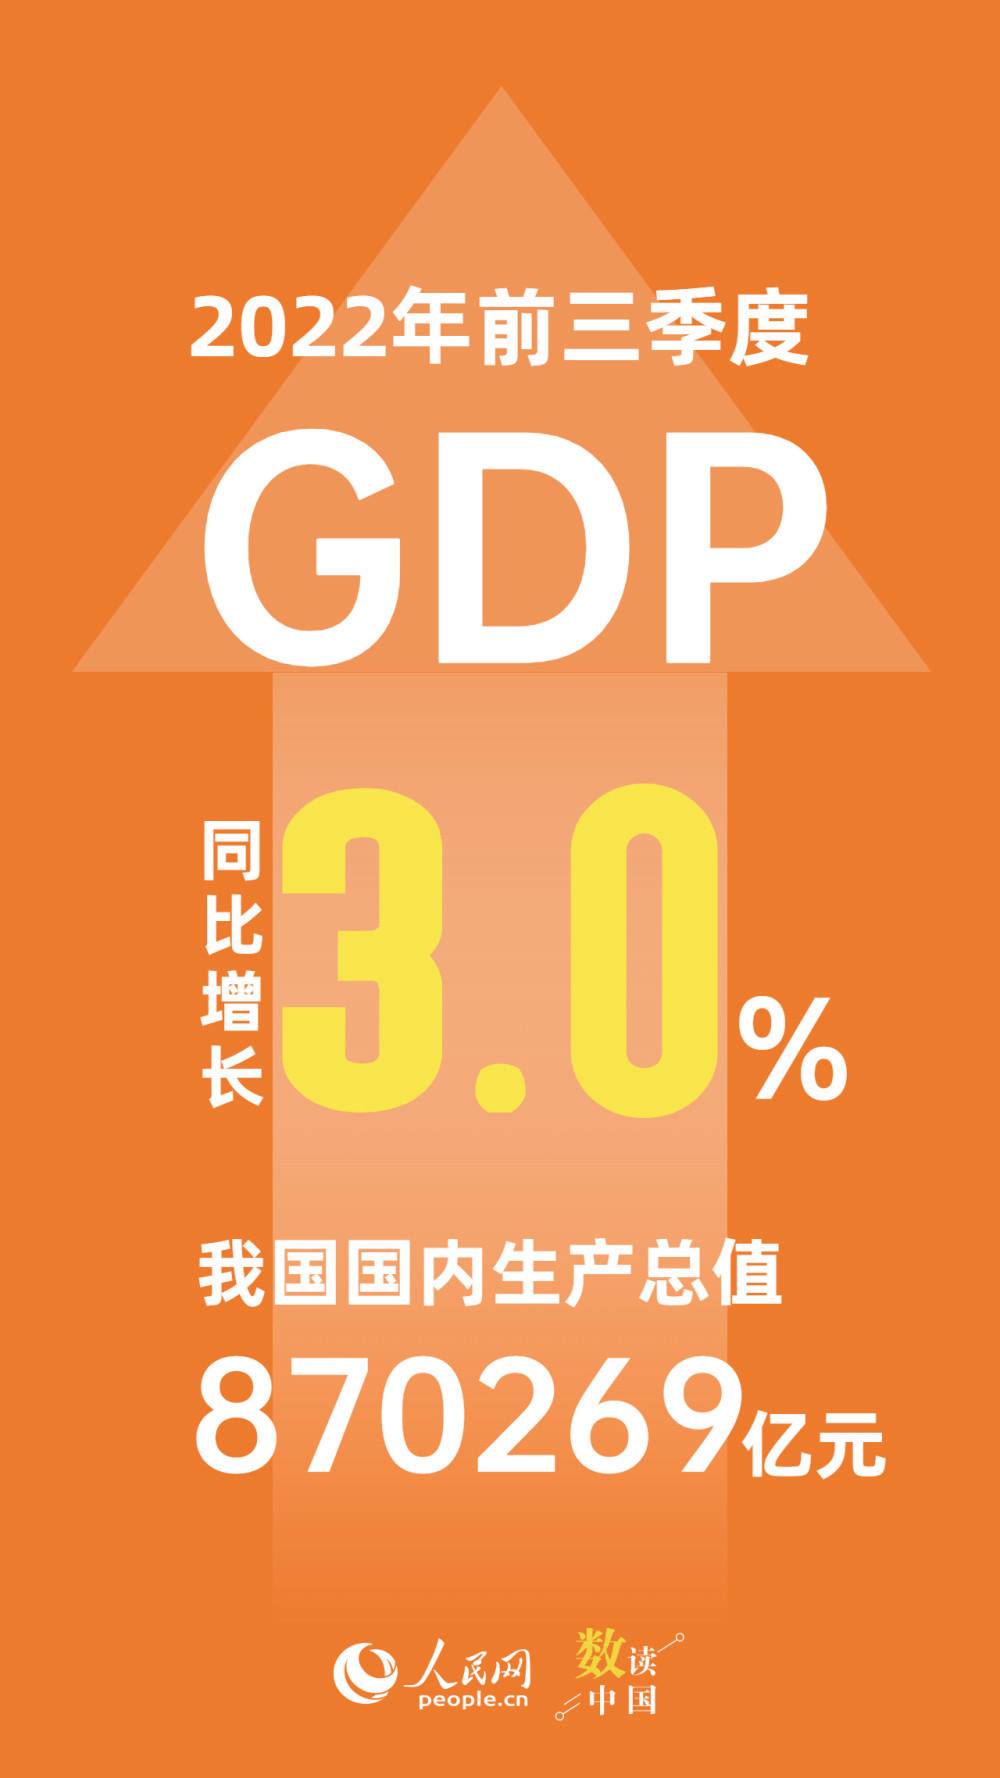 生产总值,GDP